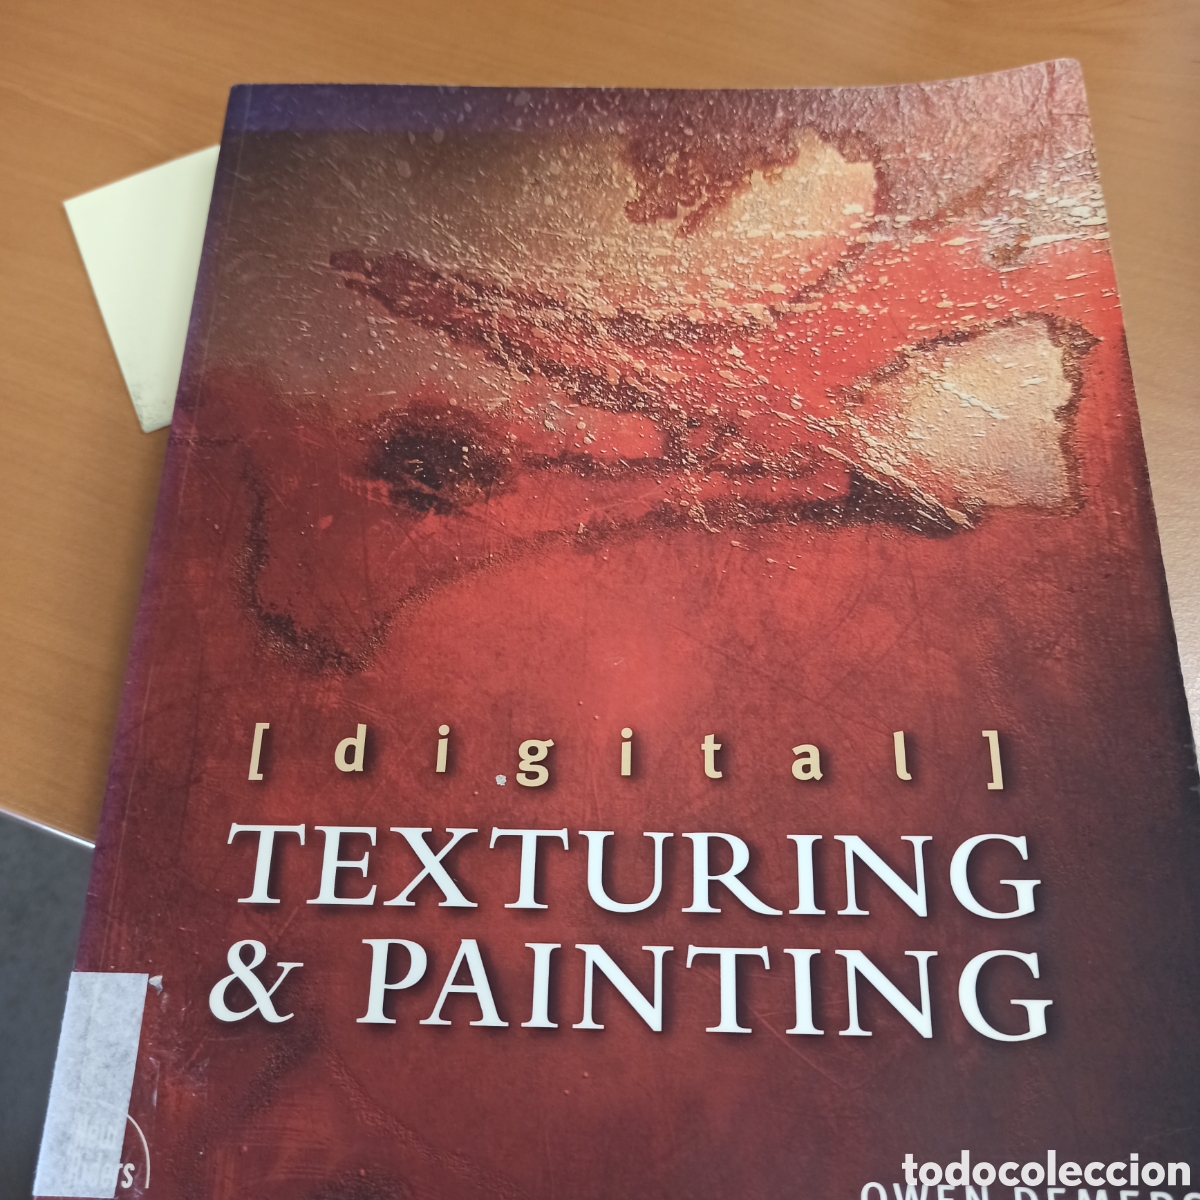 digital　en　painting　(procedente　texturing　e　venta　Compra　todocoleccion　and　de